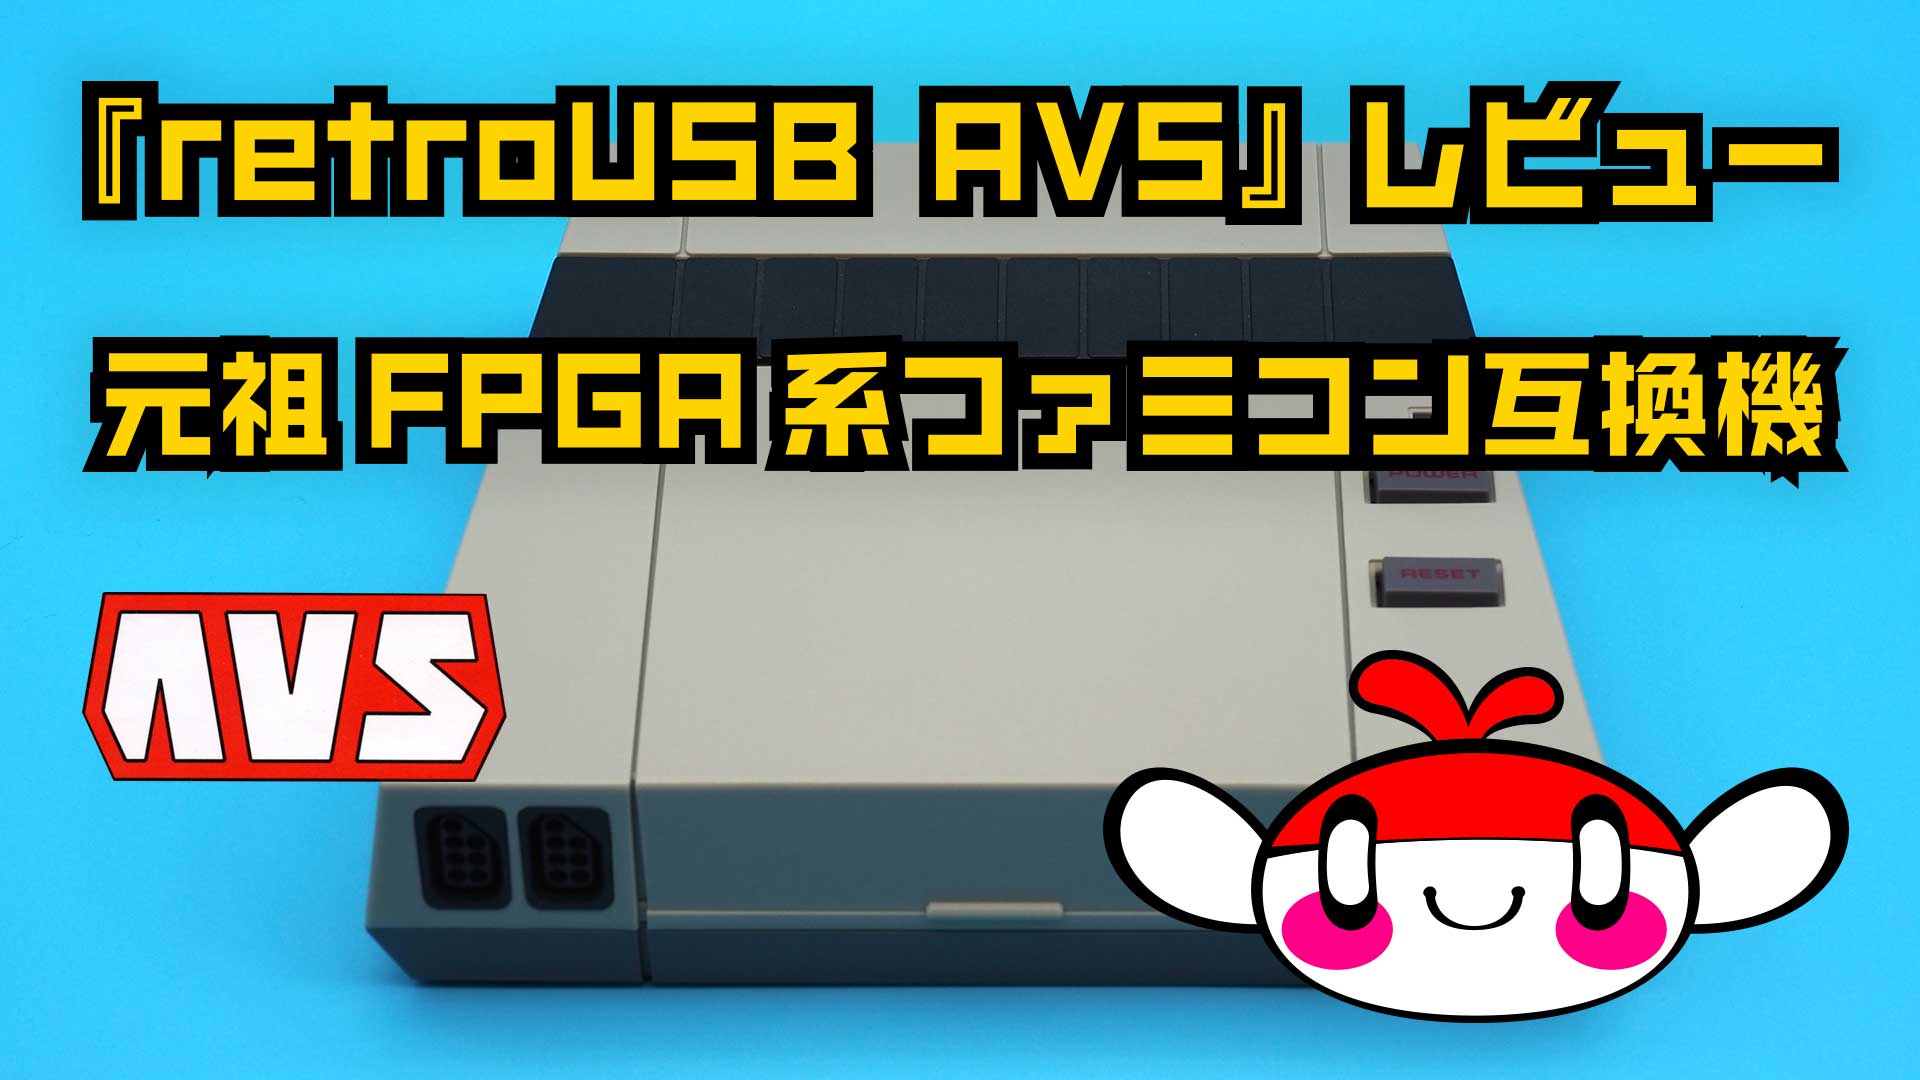 【動画コンテンツ】元祖FPGA系ファミコン互換機『retroUSB AVS』レビュー